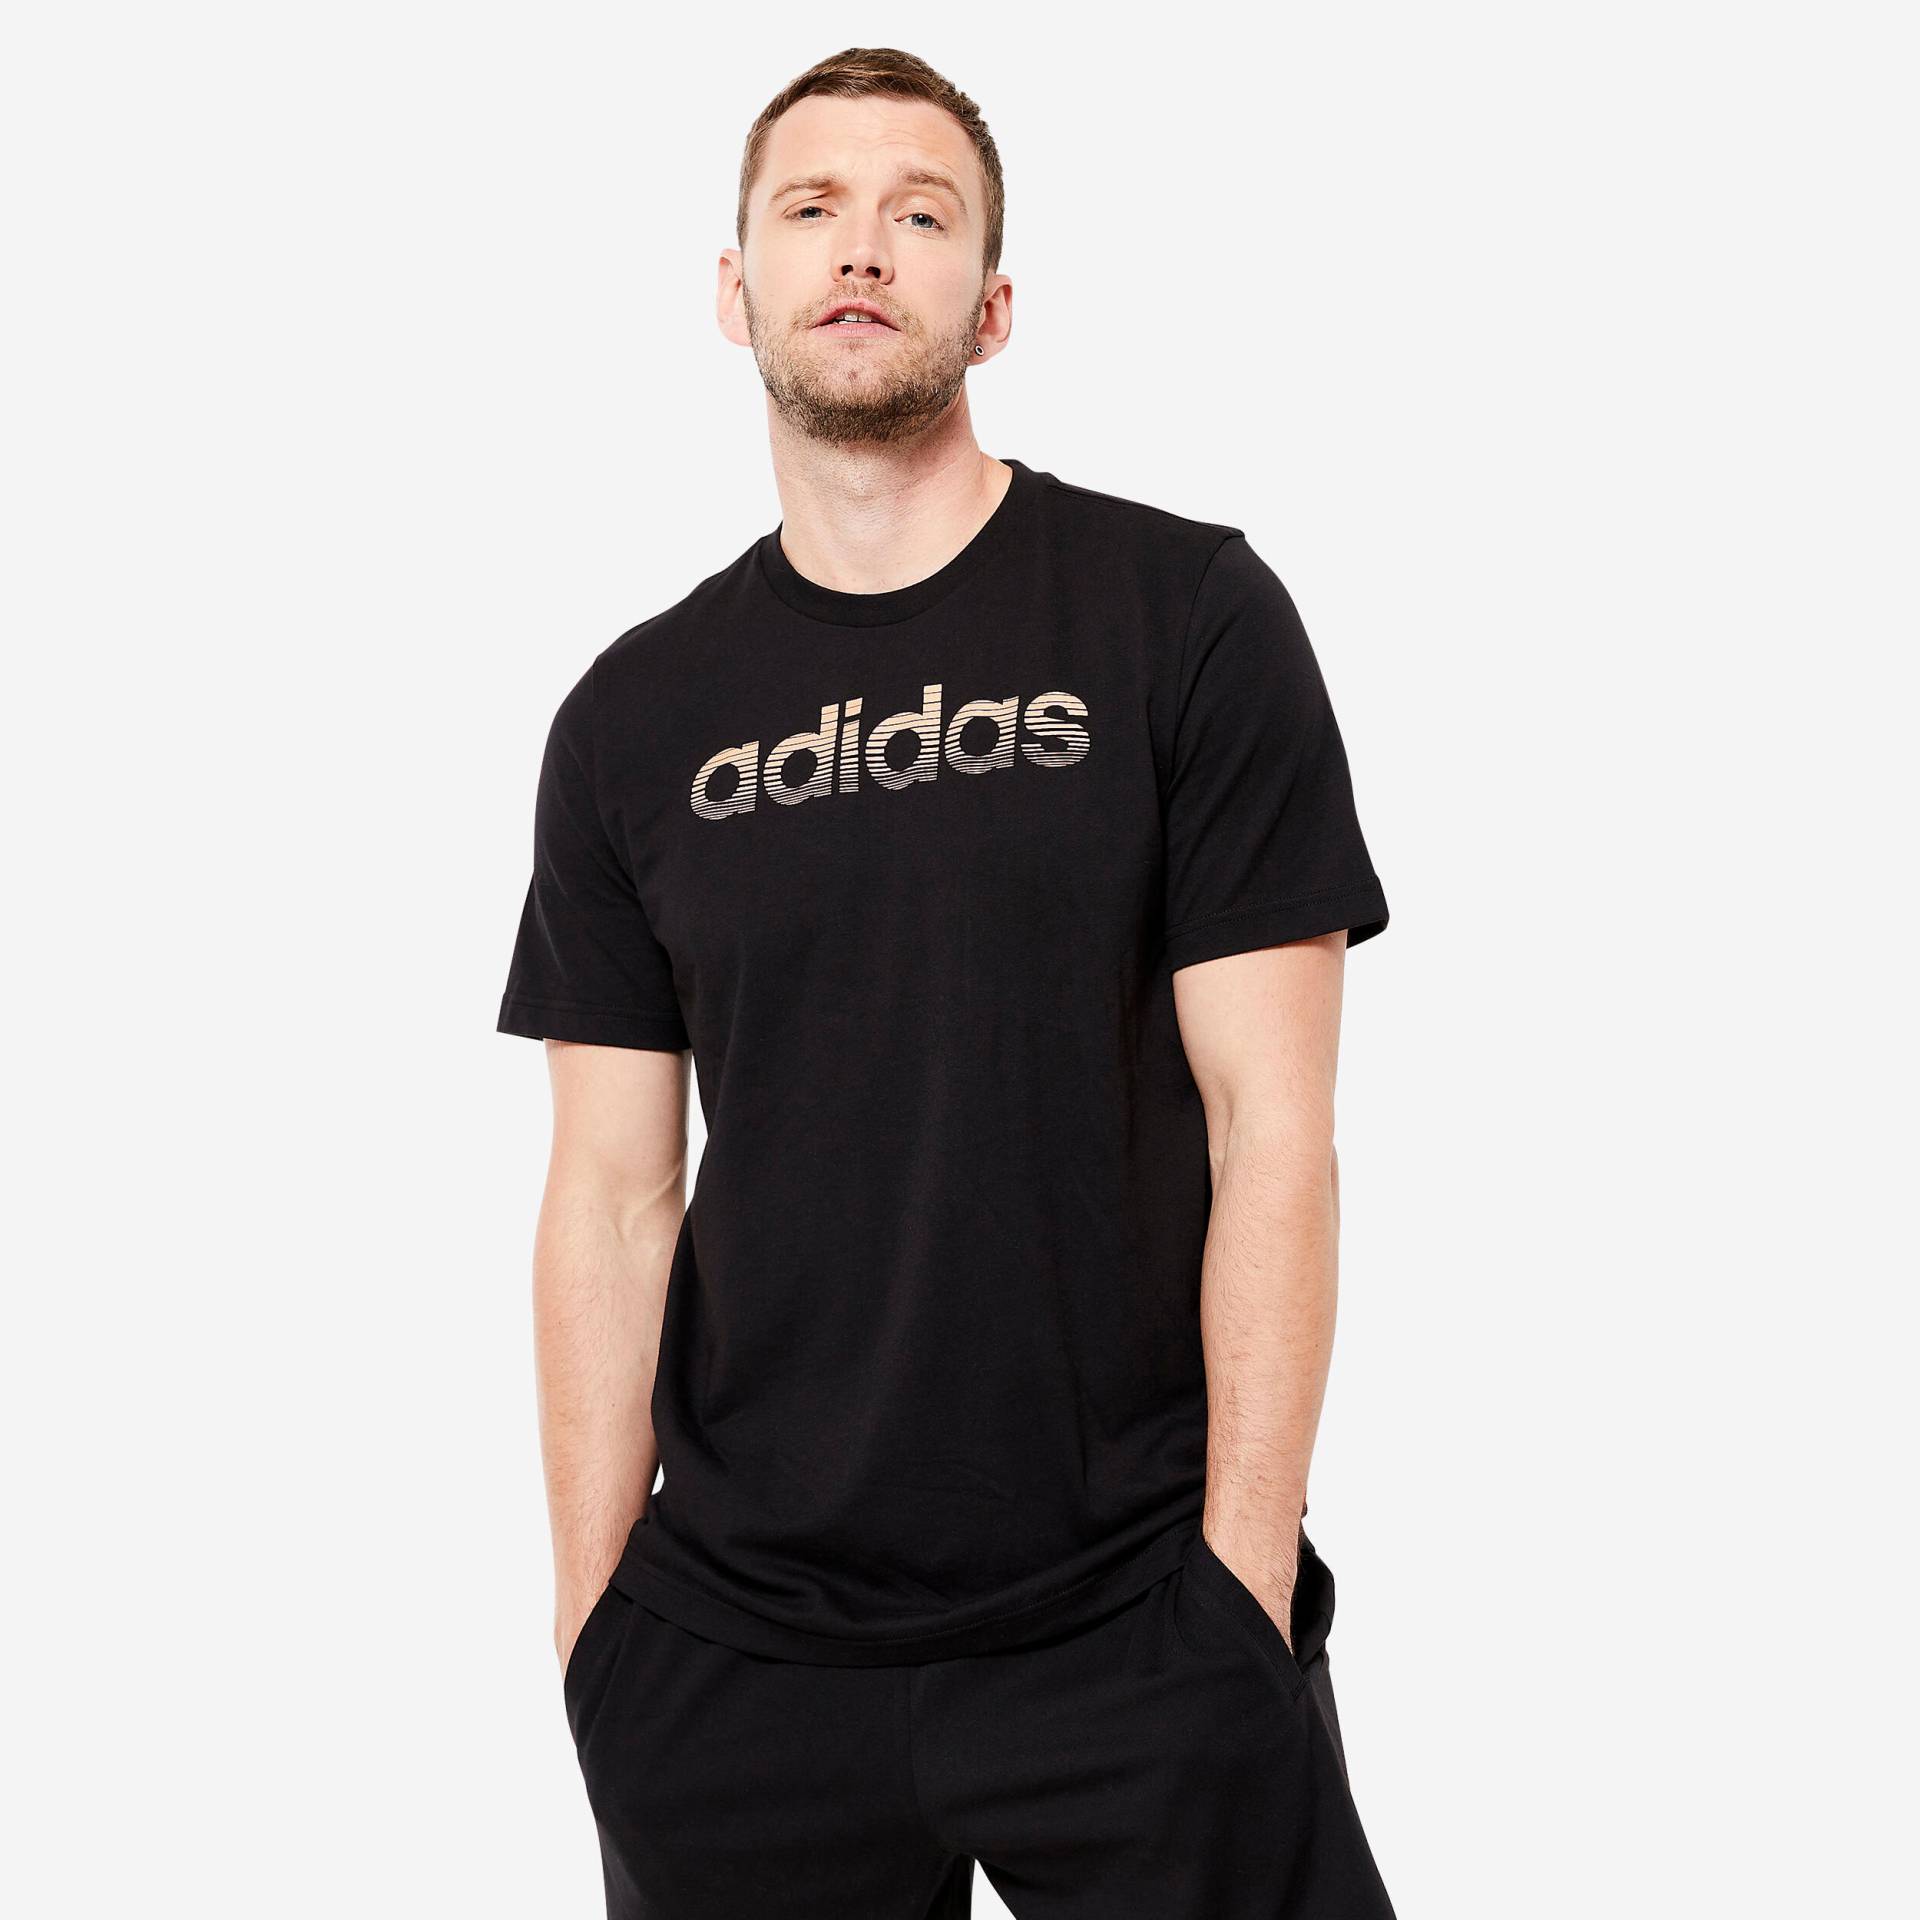 ADIDAS T-Shirt Herren weich - schwarz von Adidas